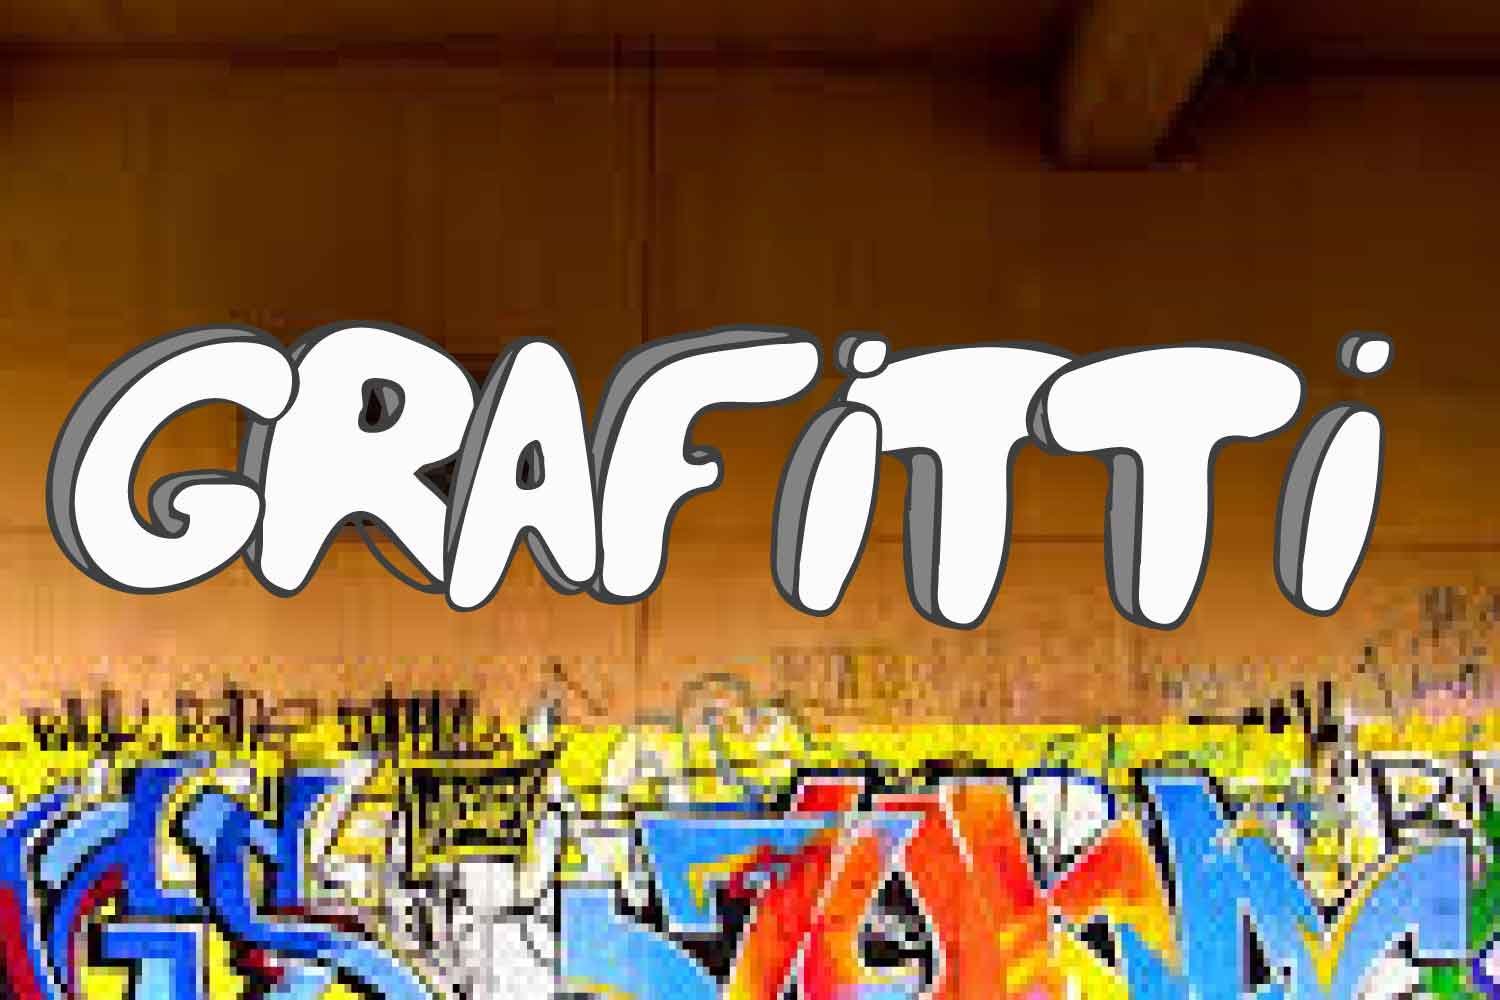 Grafitti Font cover image.